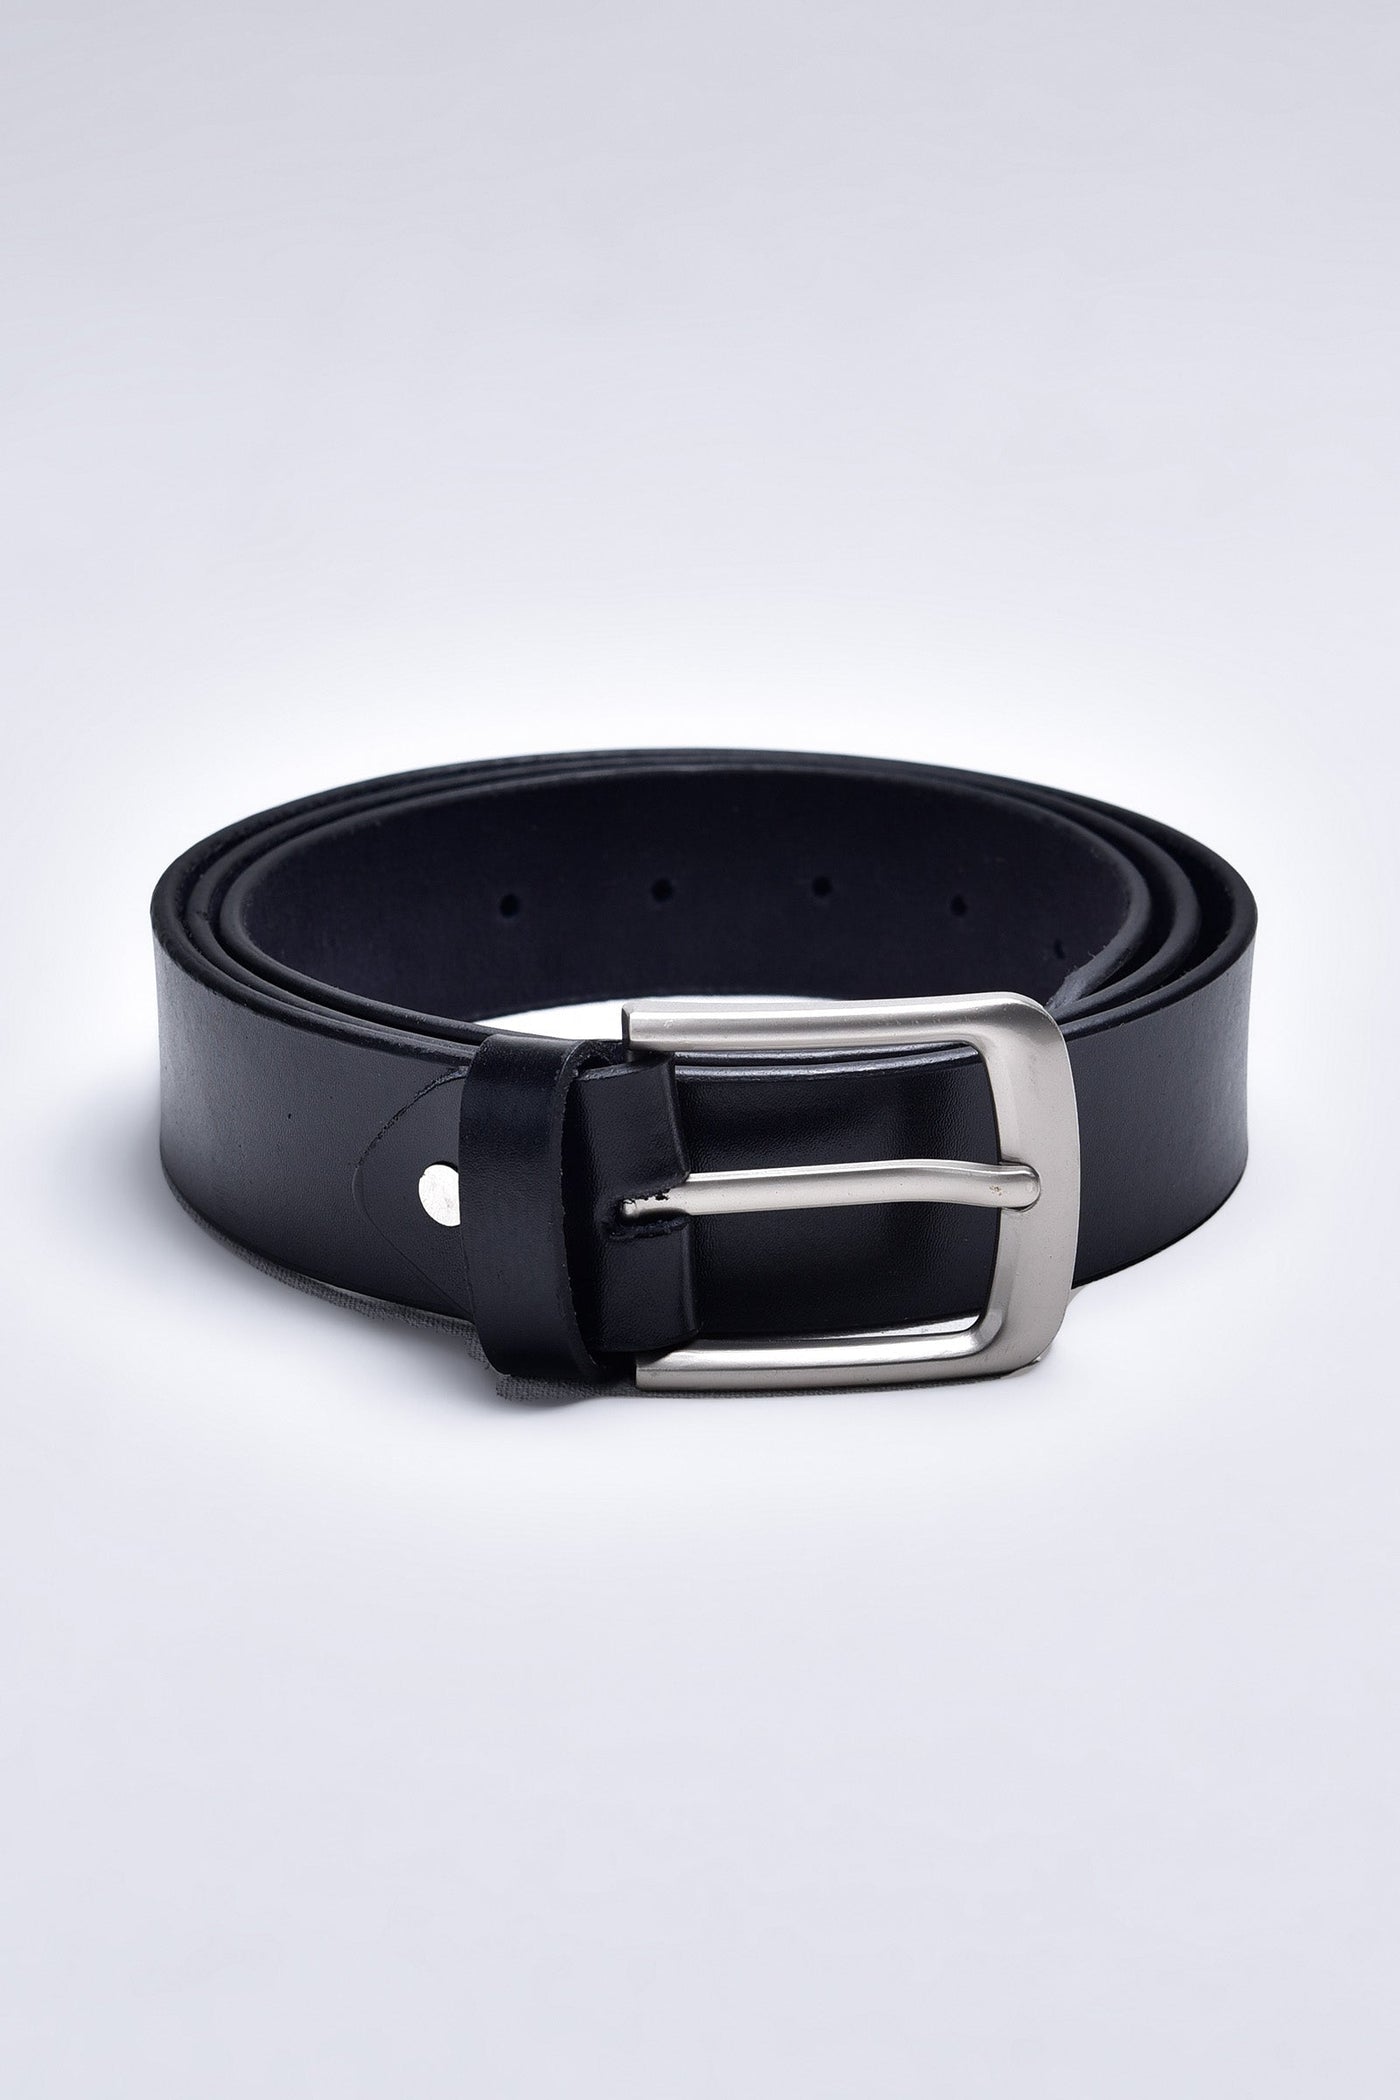 Black Formal Belt-LM11